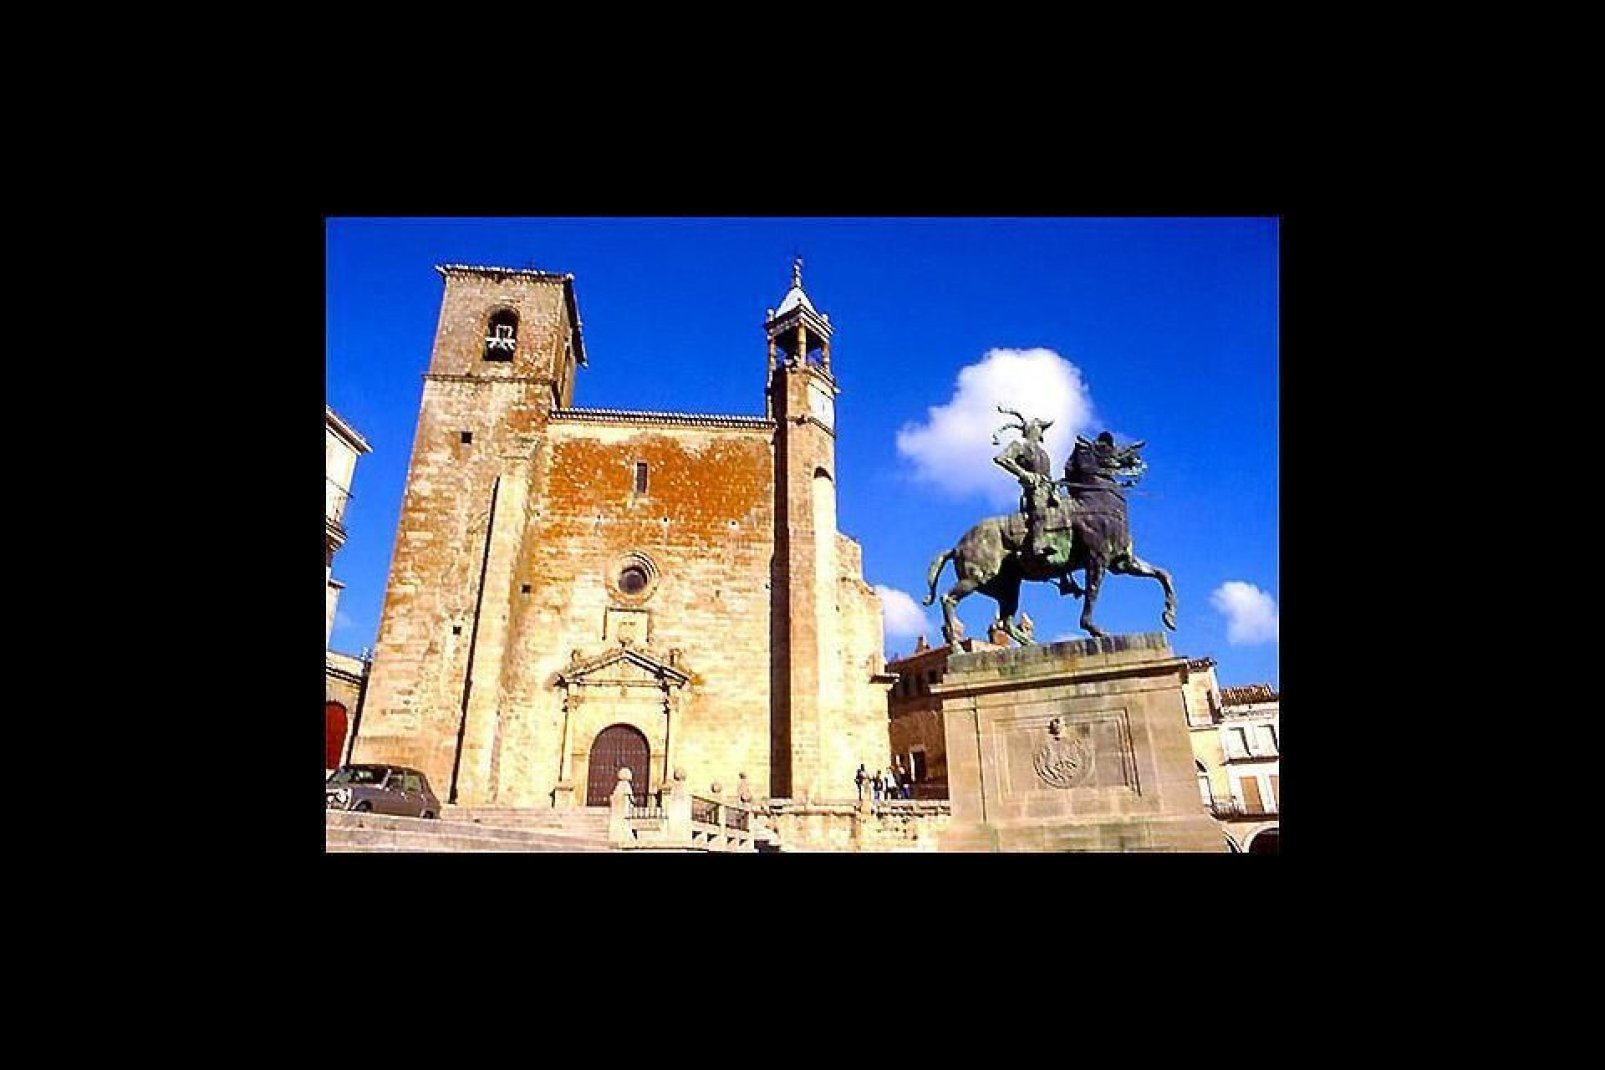 Trujillo est la plus charmante des villes de l'Extremadura, avec ses hôtels particuliers, ses tours et ses murailles du château extrêmement bien préservés depuis le XVIème siècle.